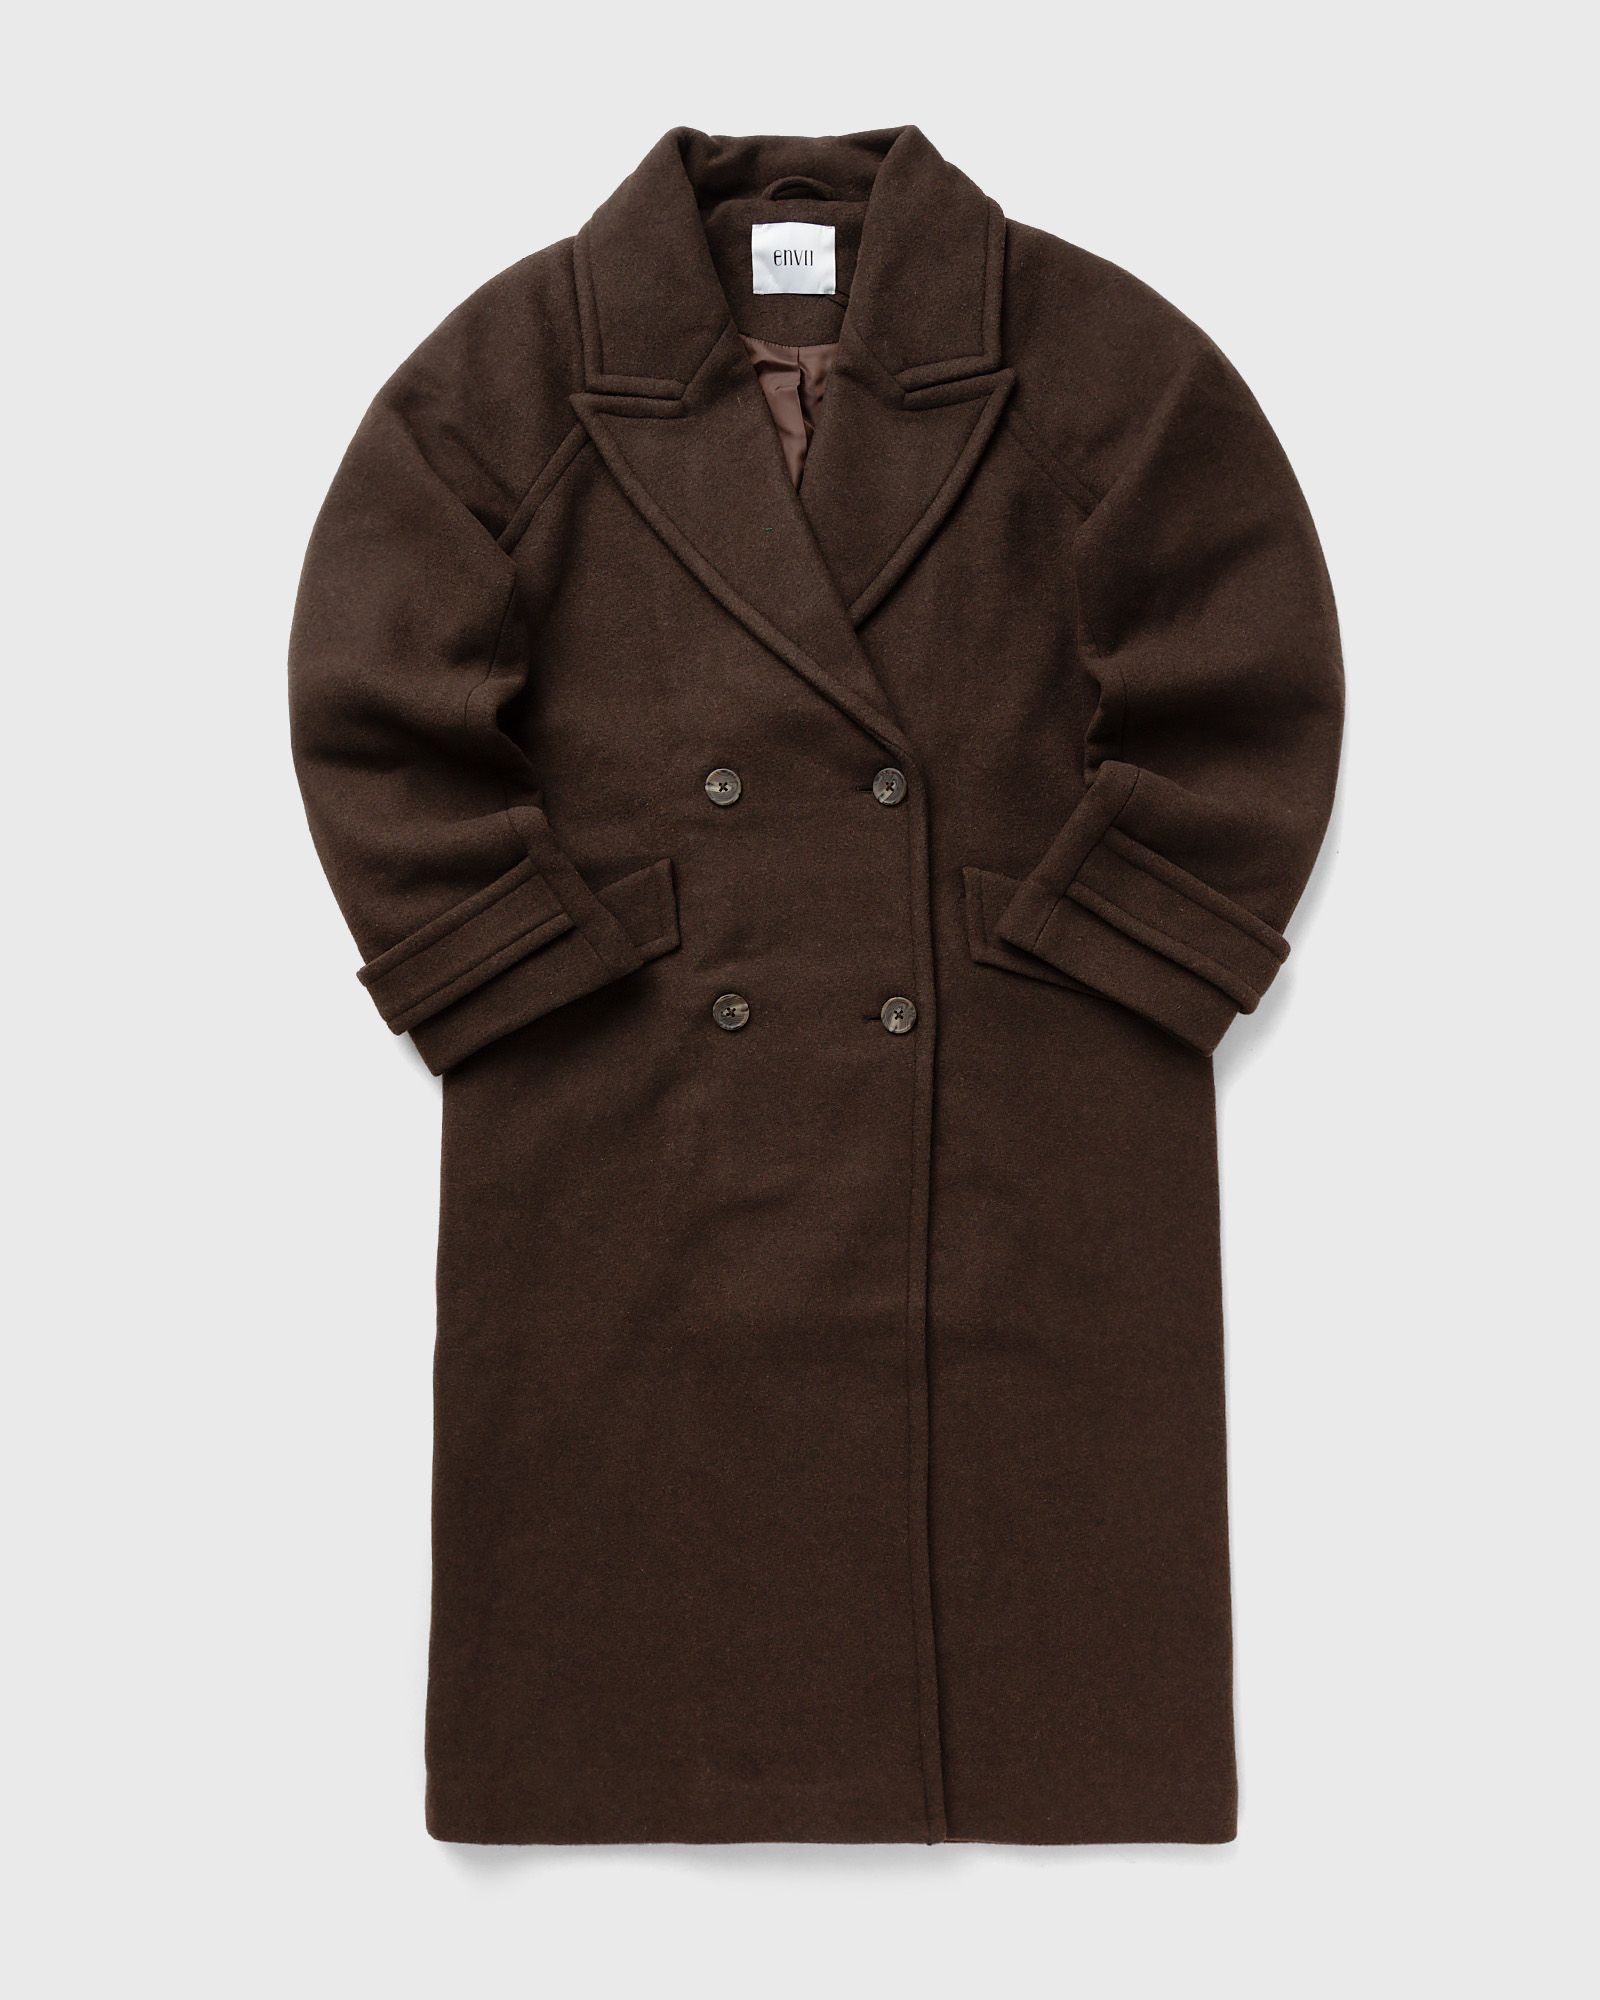 Envii - enchantal jacket 6861 women coats brown in größe:s/m